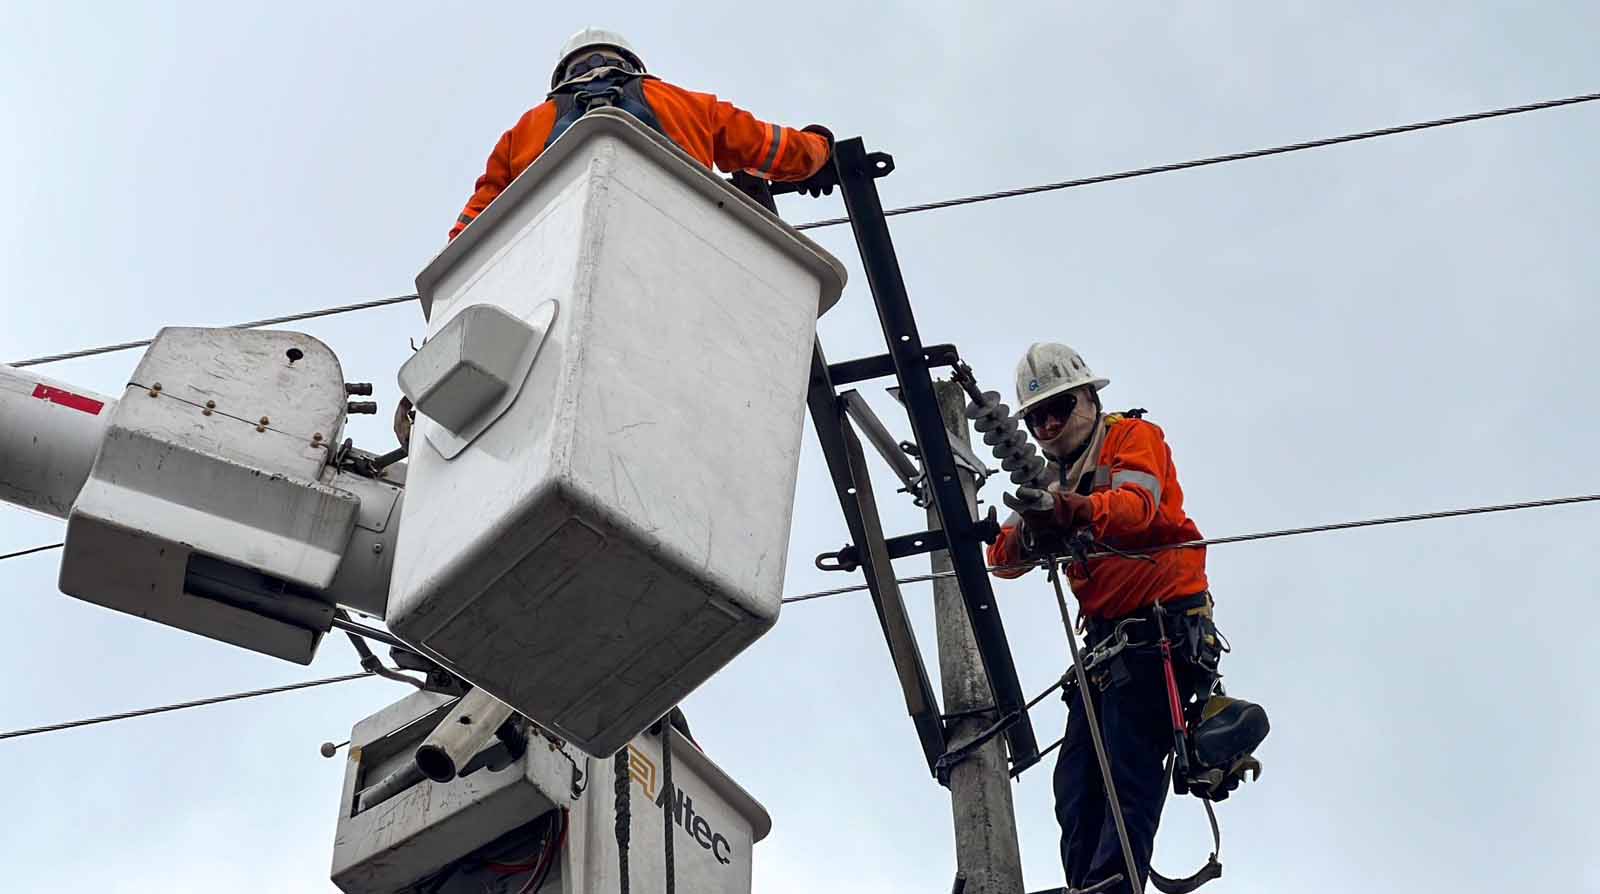 El domingo 5 de marzo se realizará un corte de energía eléctrica en el sur de Quito. Foto: Twitter